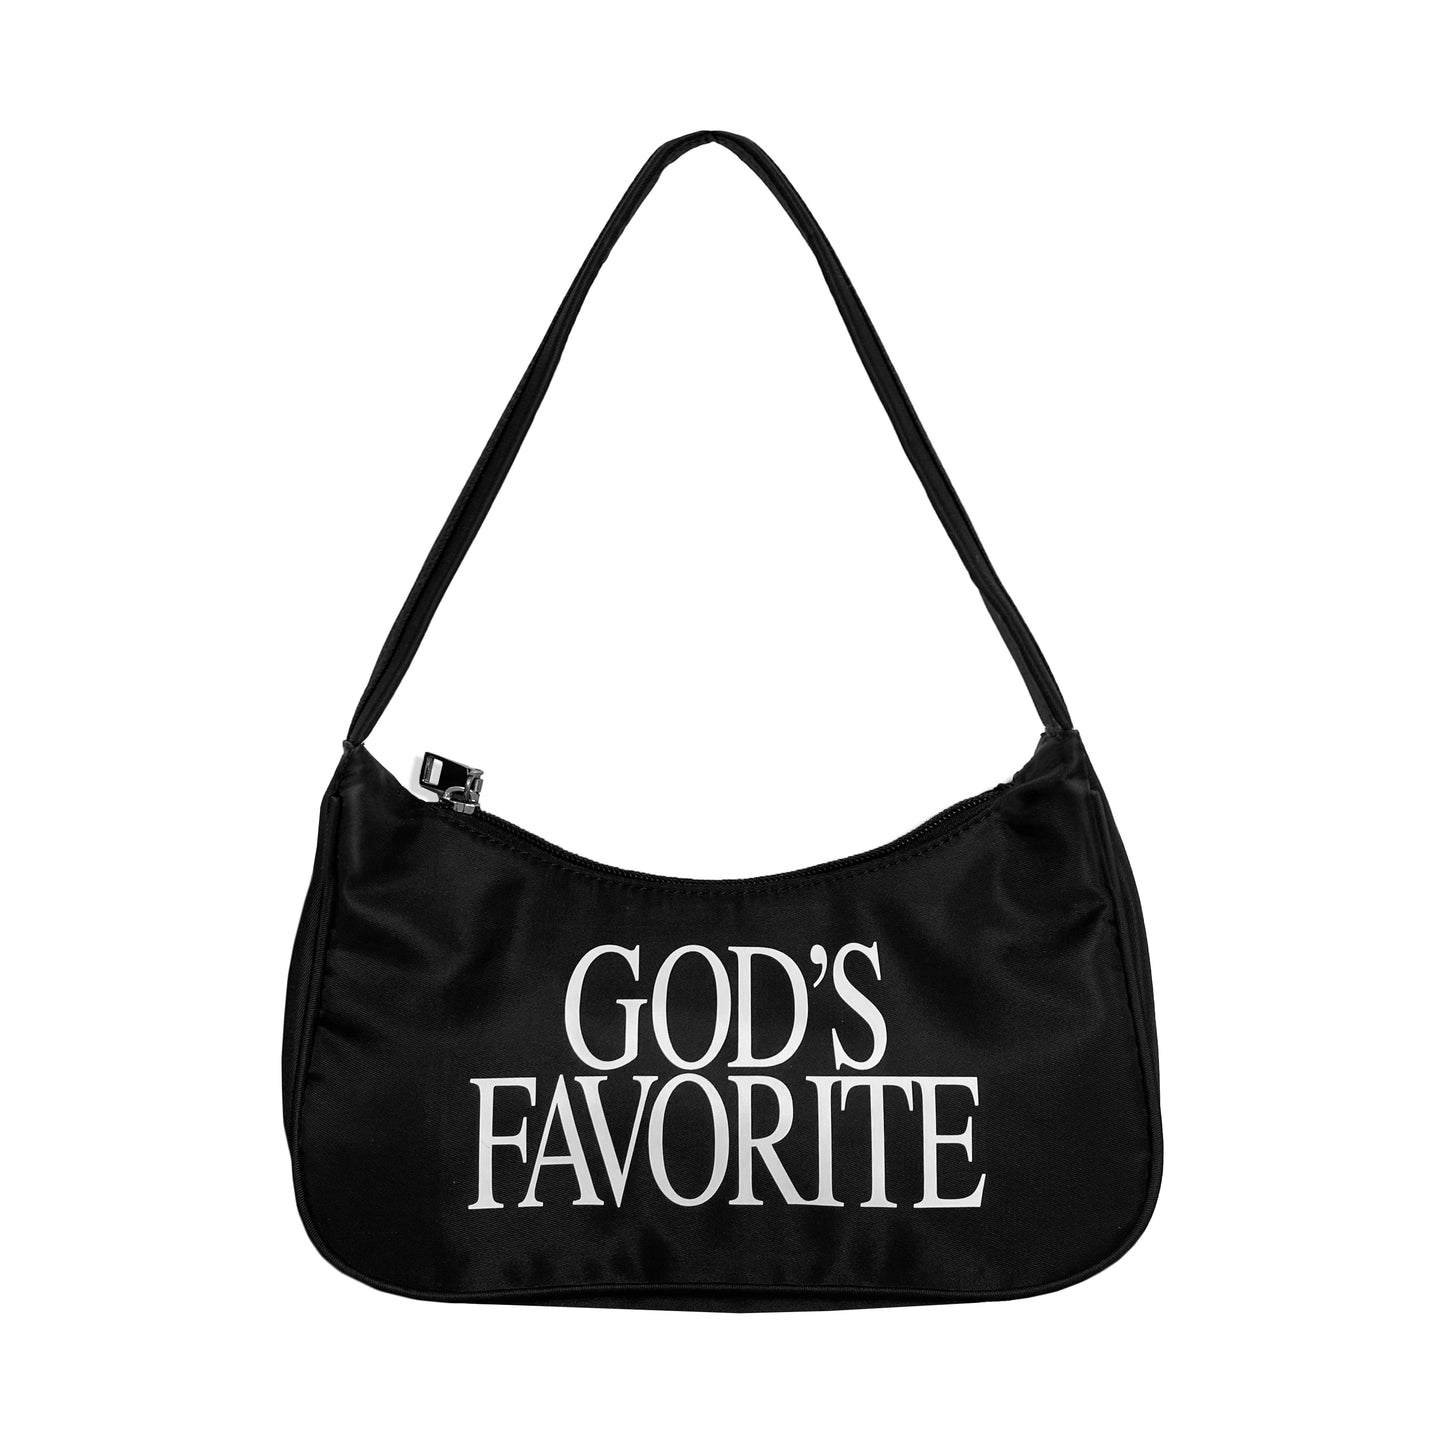 God's Favorite Bag